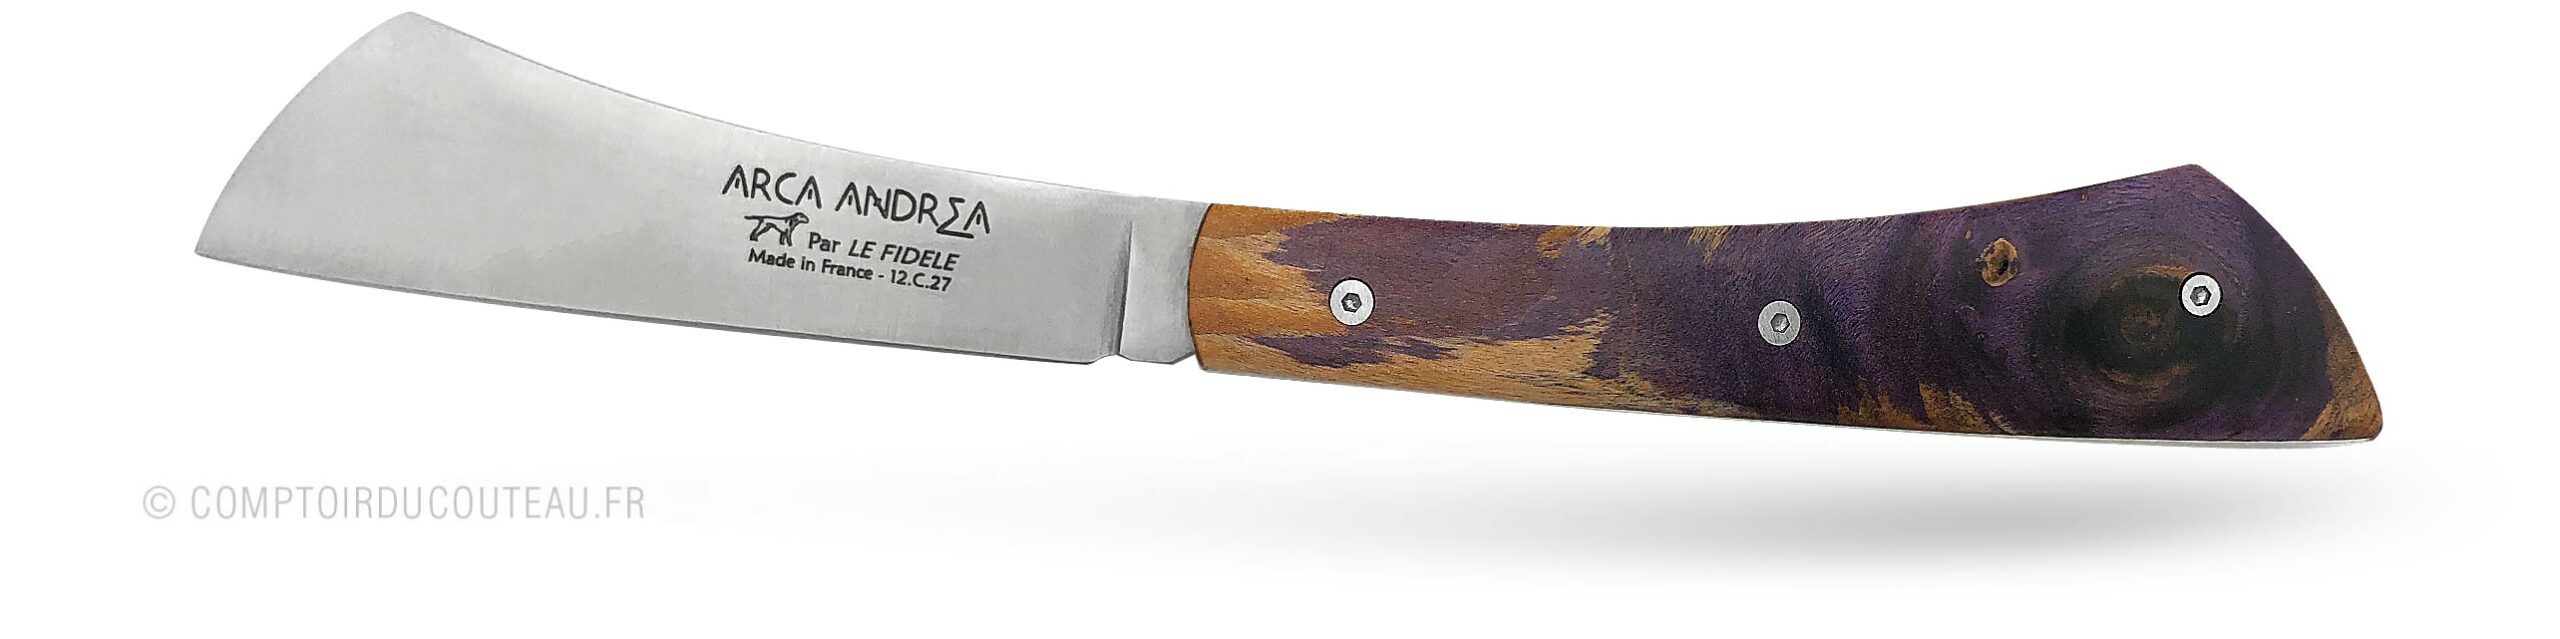 couteau Arca Andrea Manche en chêne stabilise Purple vue profil